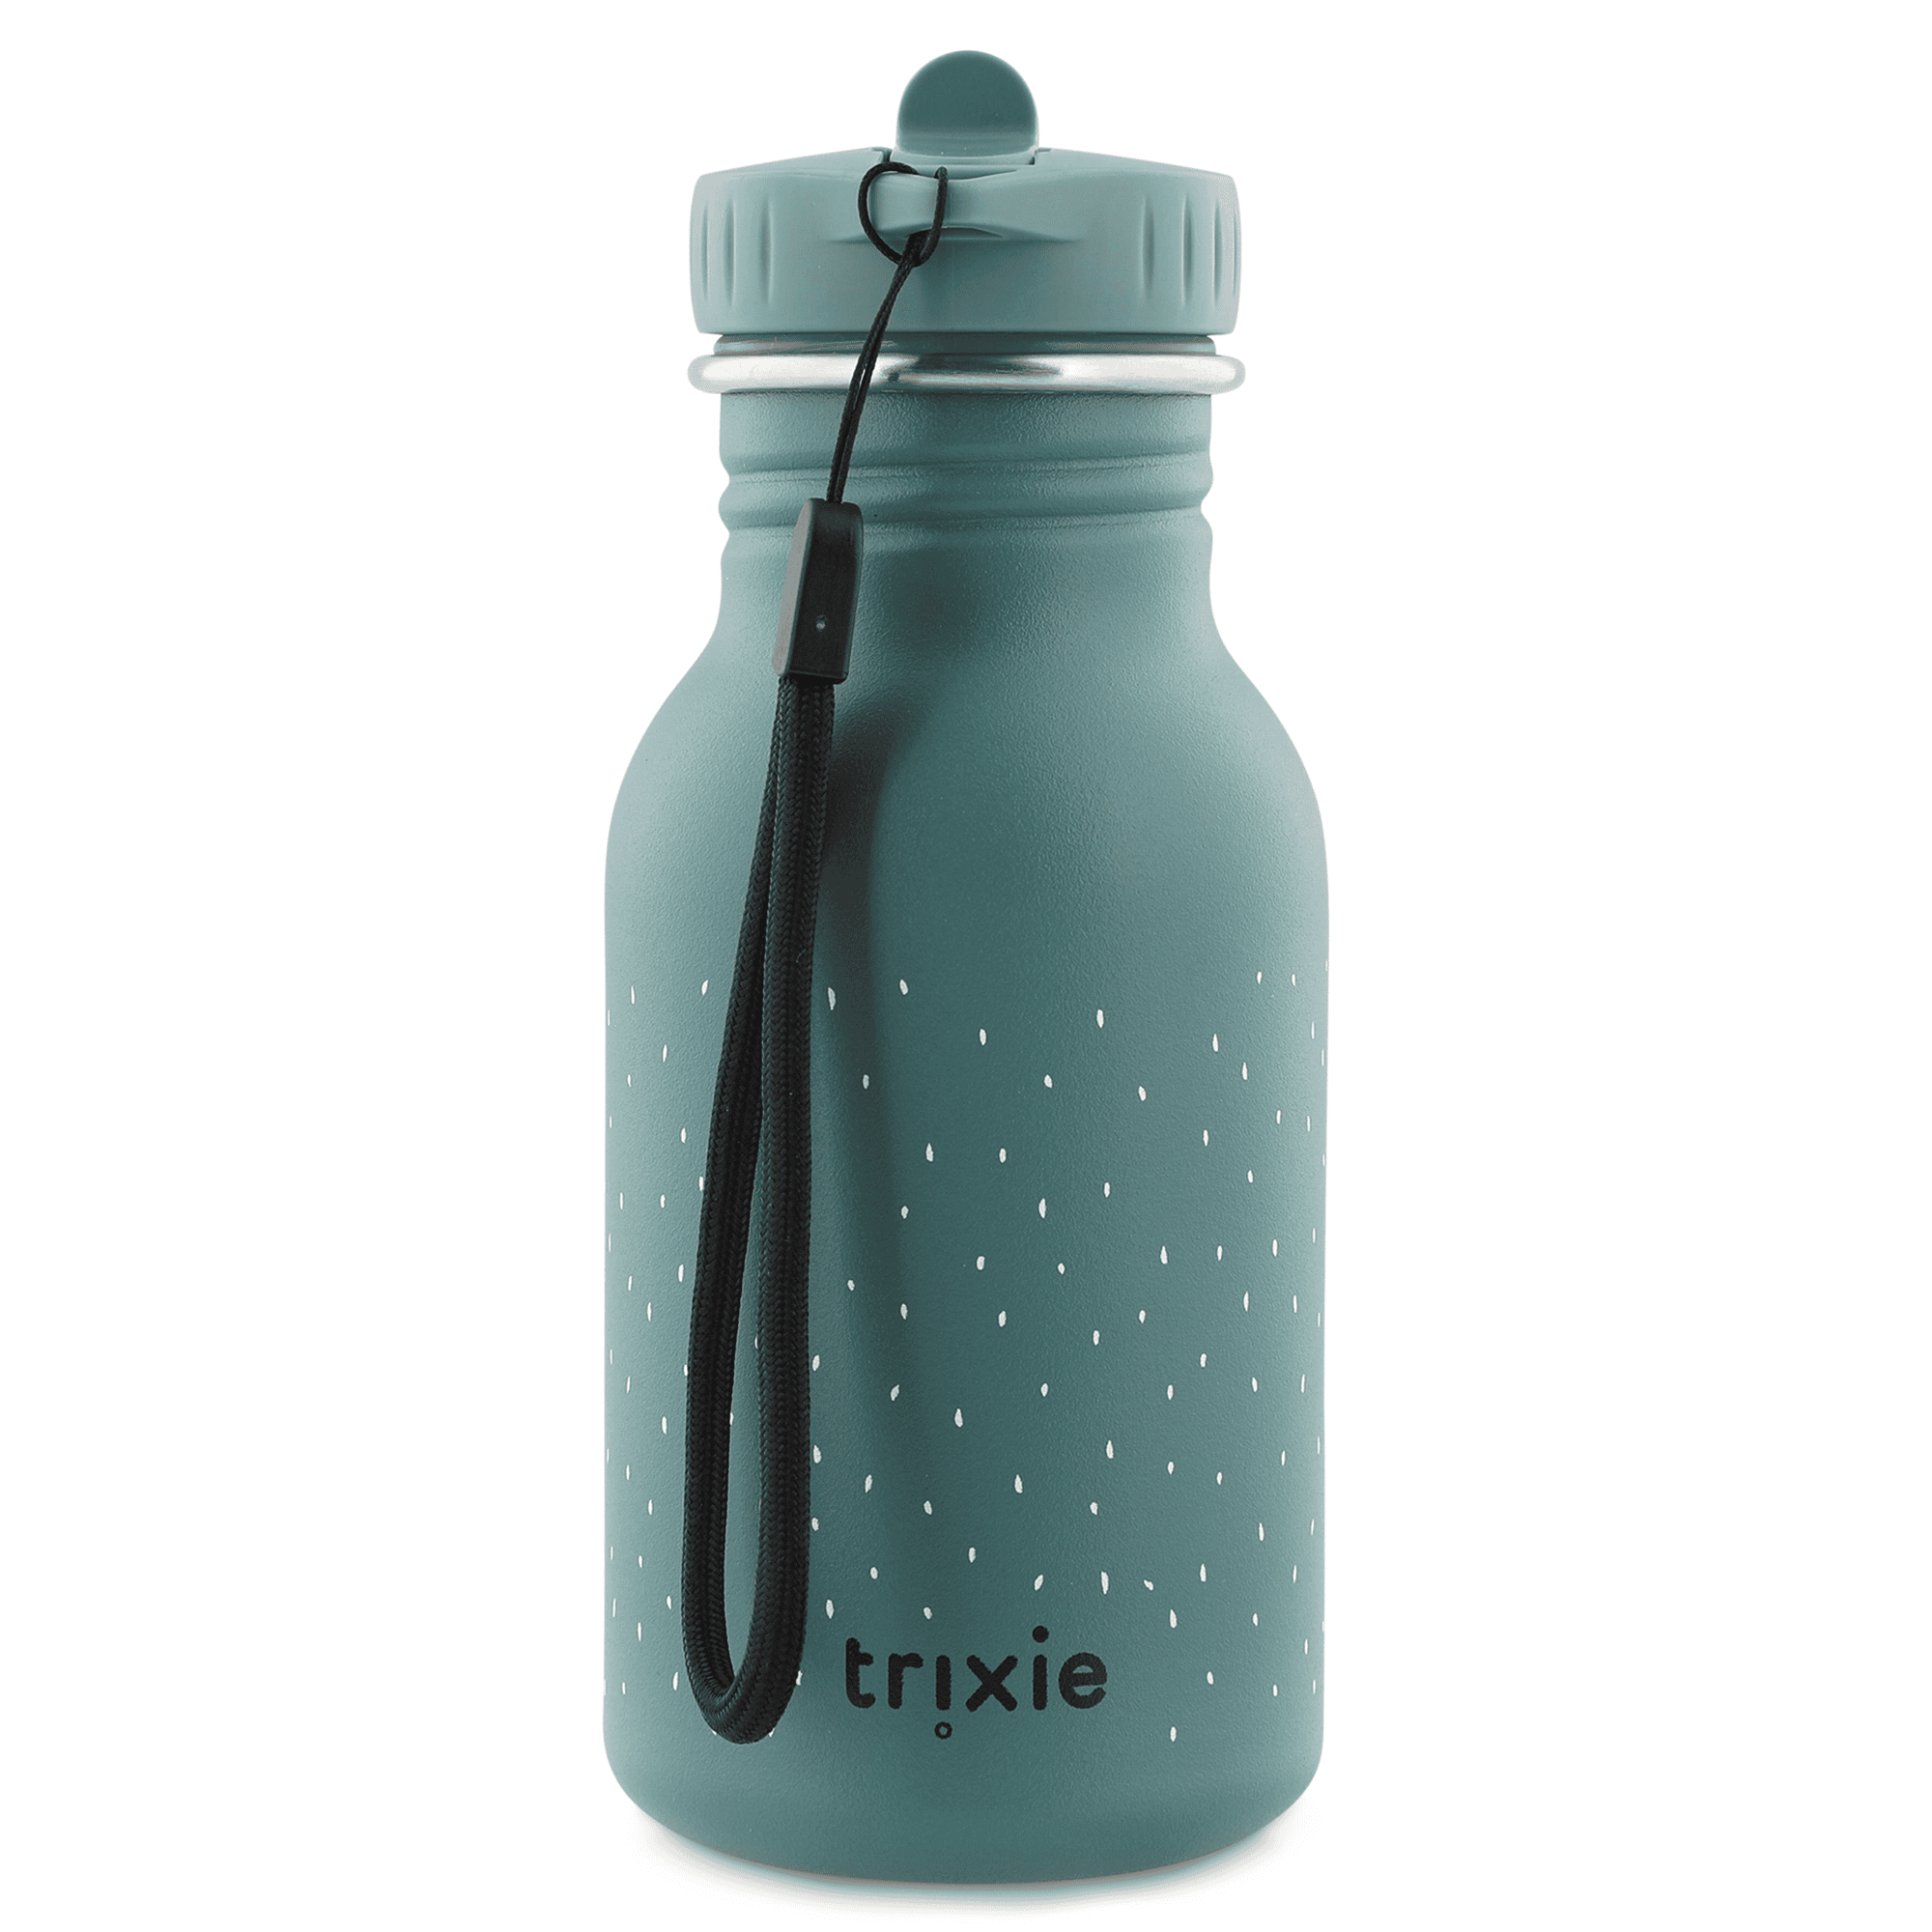 Trinkflasche - Mr. Hippo trixie Türkis 2000583865605 2